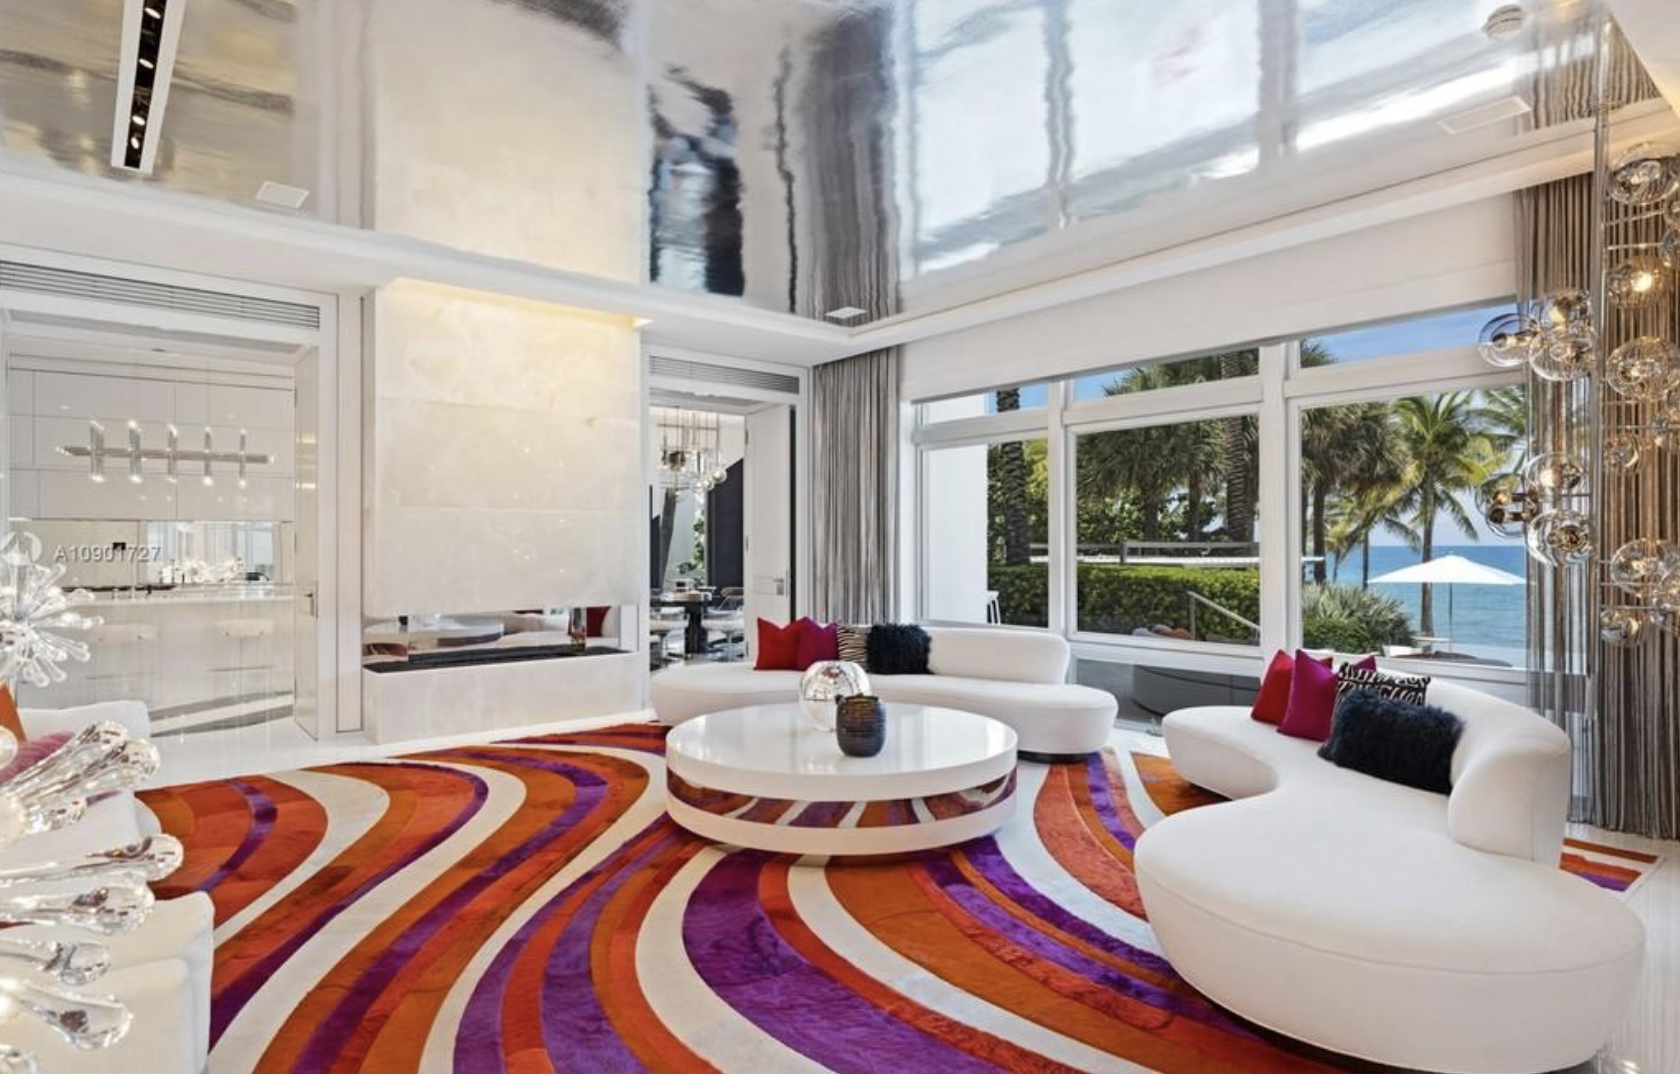 Casa Tommy Hilfiger salon con alfombra roja y lila